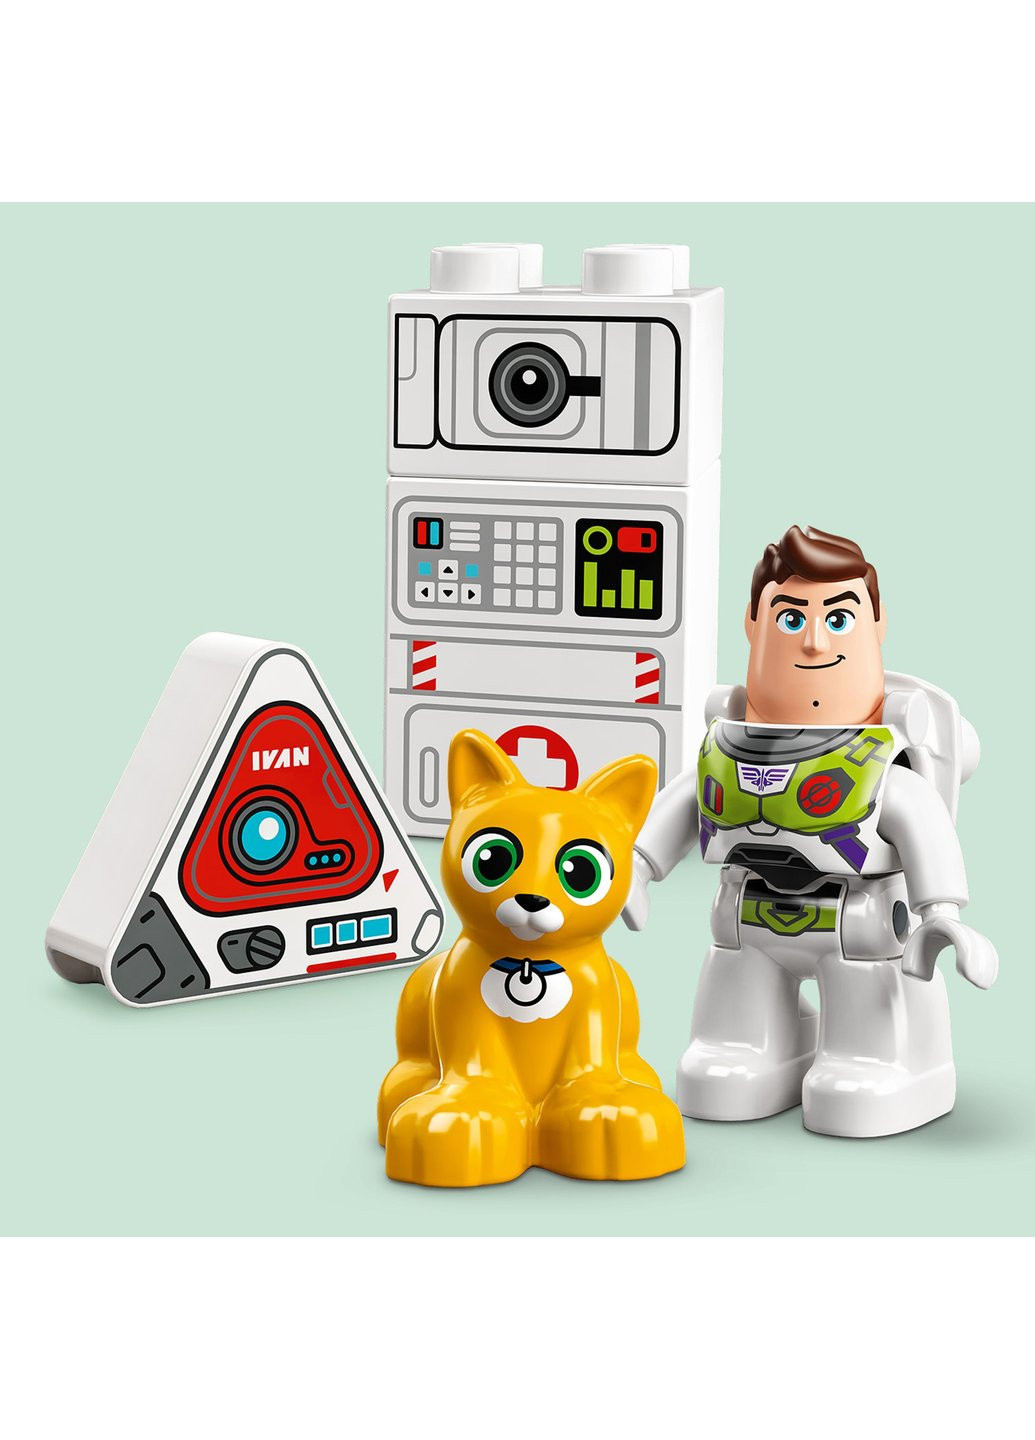 Конструктор DUPLO Disney Базз Спаситель та космічна місія (10962) Lego (257099767)